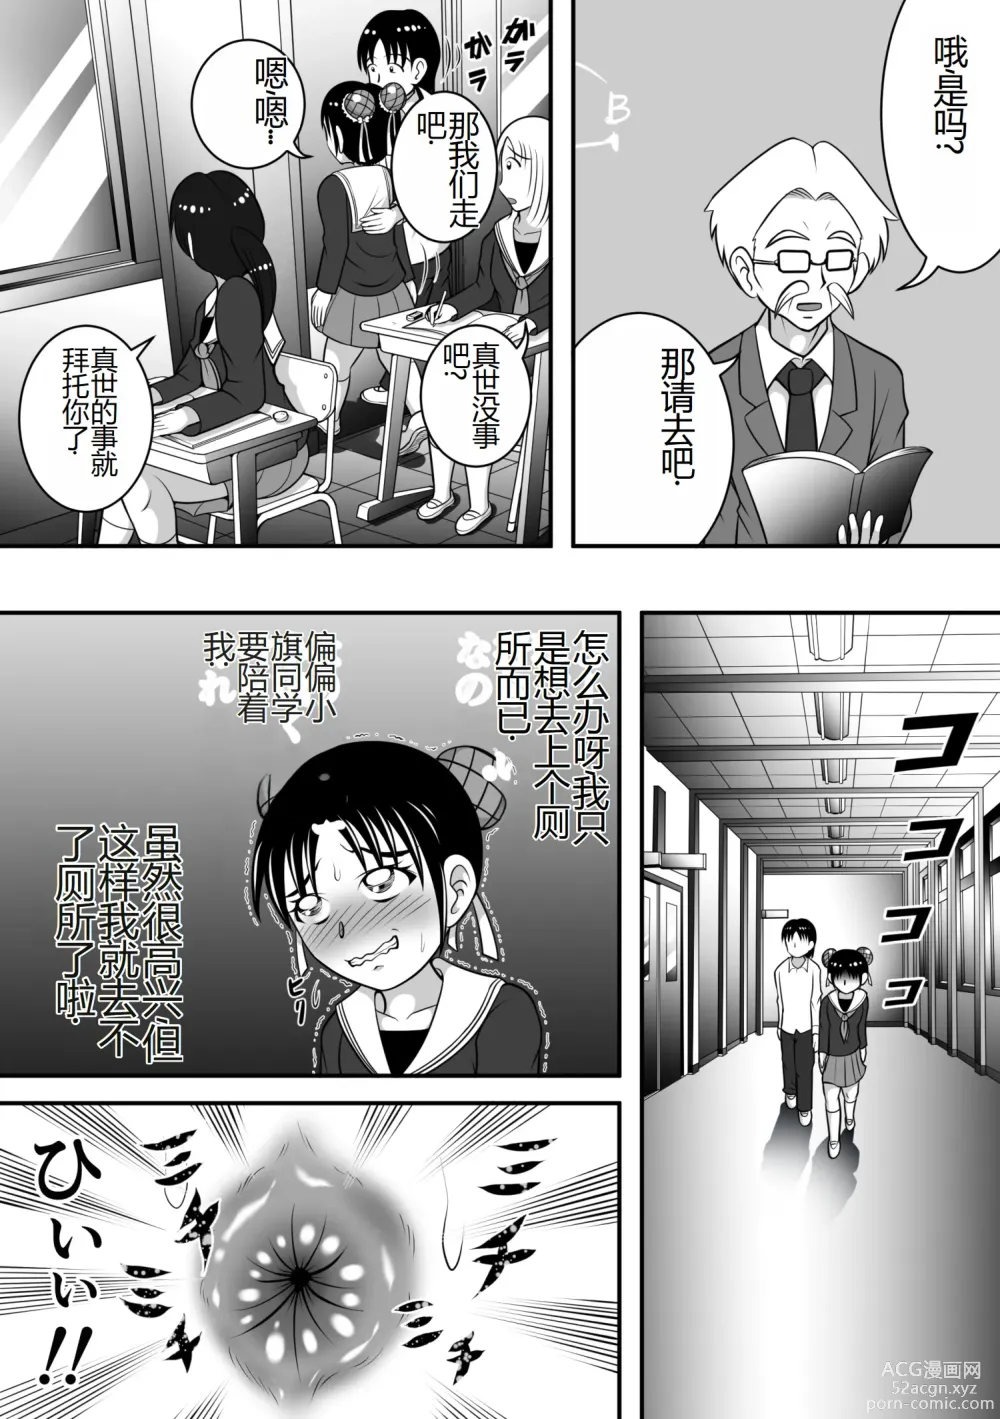 Page 6 of doujinshi 报告老师,我憋不住了